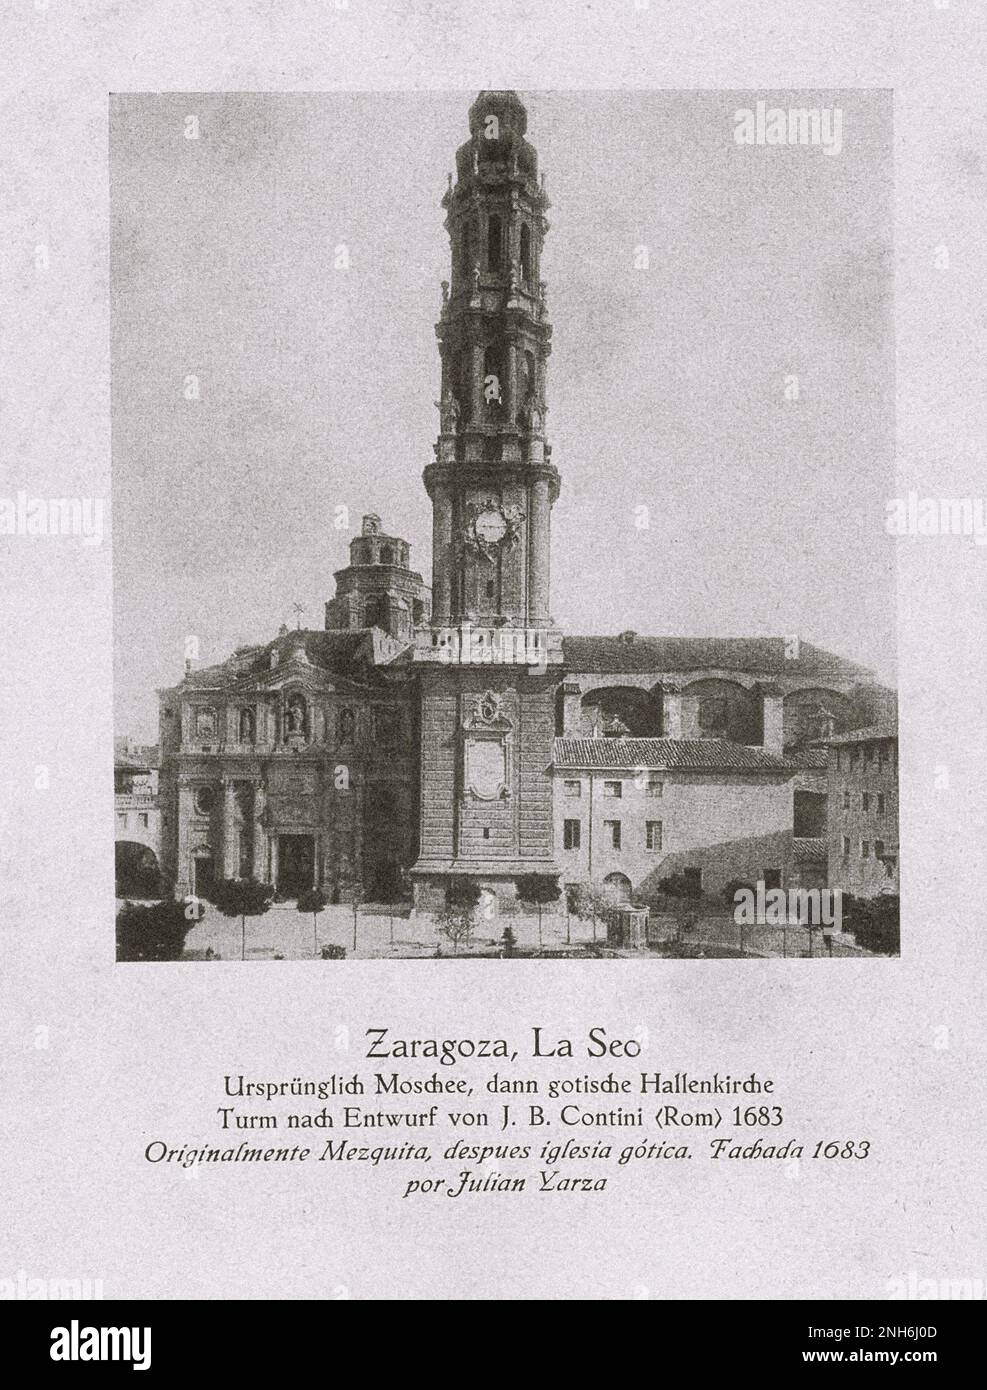 Architecture de la vieille Espagne. Cathédrale du Sauveur de Saragosse (Catedral del Salvador ou la Seo de Saragosse). A l'origine une mosquée, puis une tour d'église de hall gothique conçue par J.B. Contini (Rome) 1683 Banque D'Images